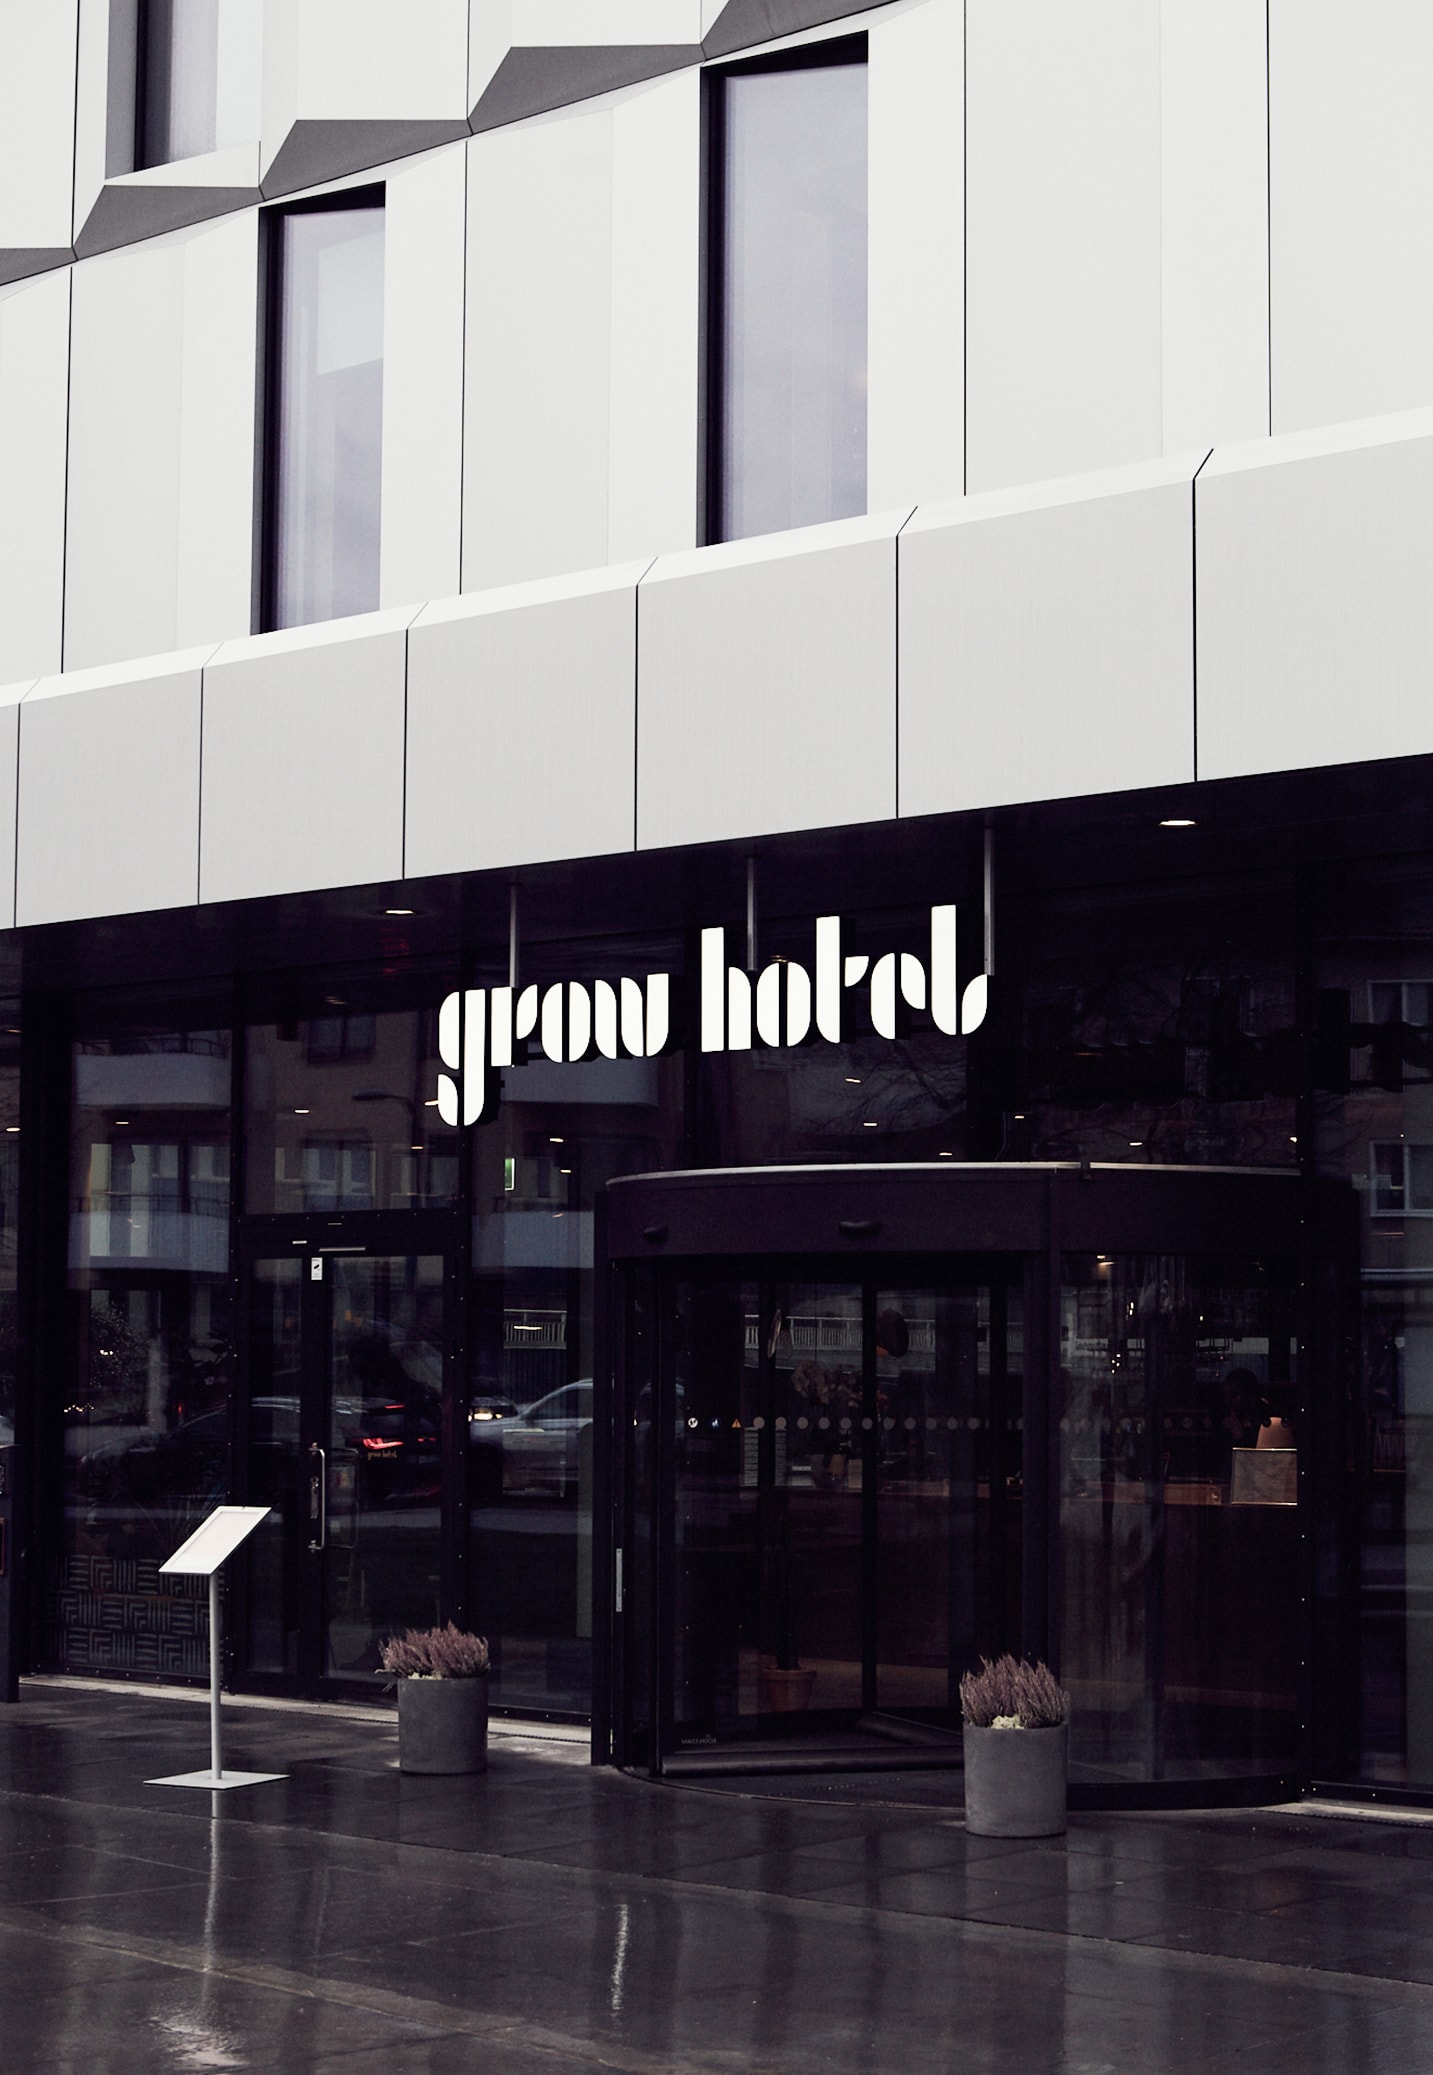 Boende för två personer inklusive 2-rätters på Grow Hotel i Stockholm (20 av 21)